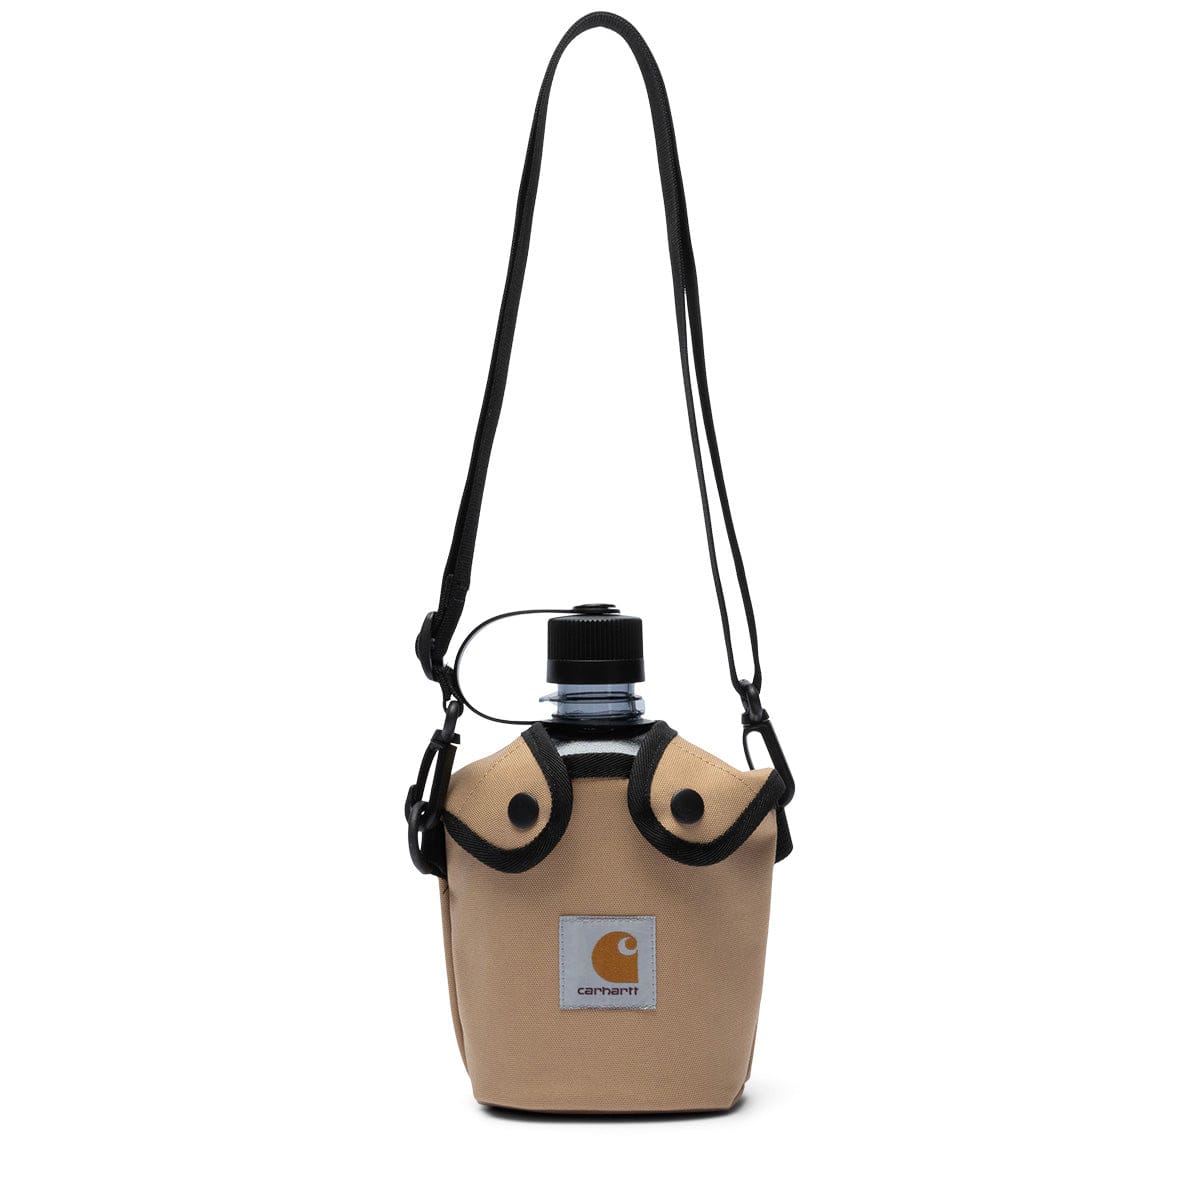 Carhartt Delta Bag Green Tactical Shoulder Bag Water Resistant 